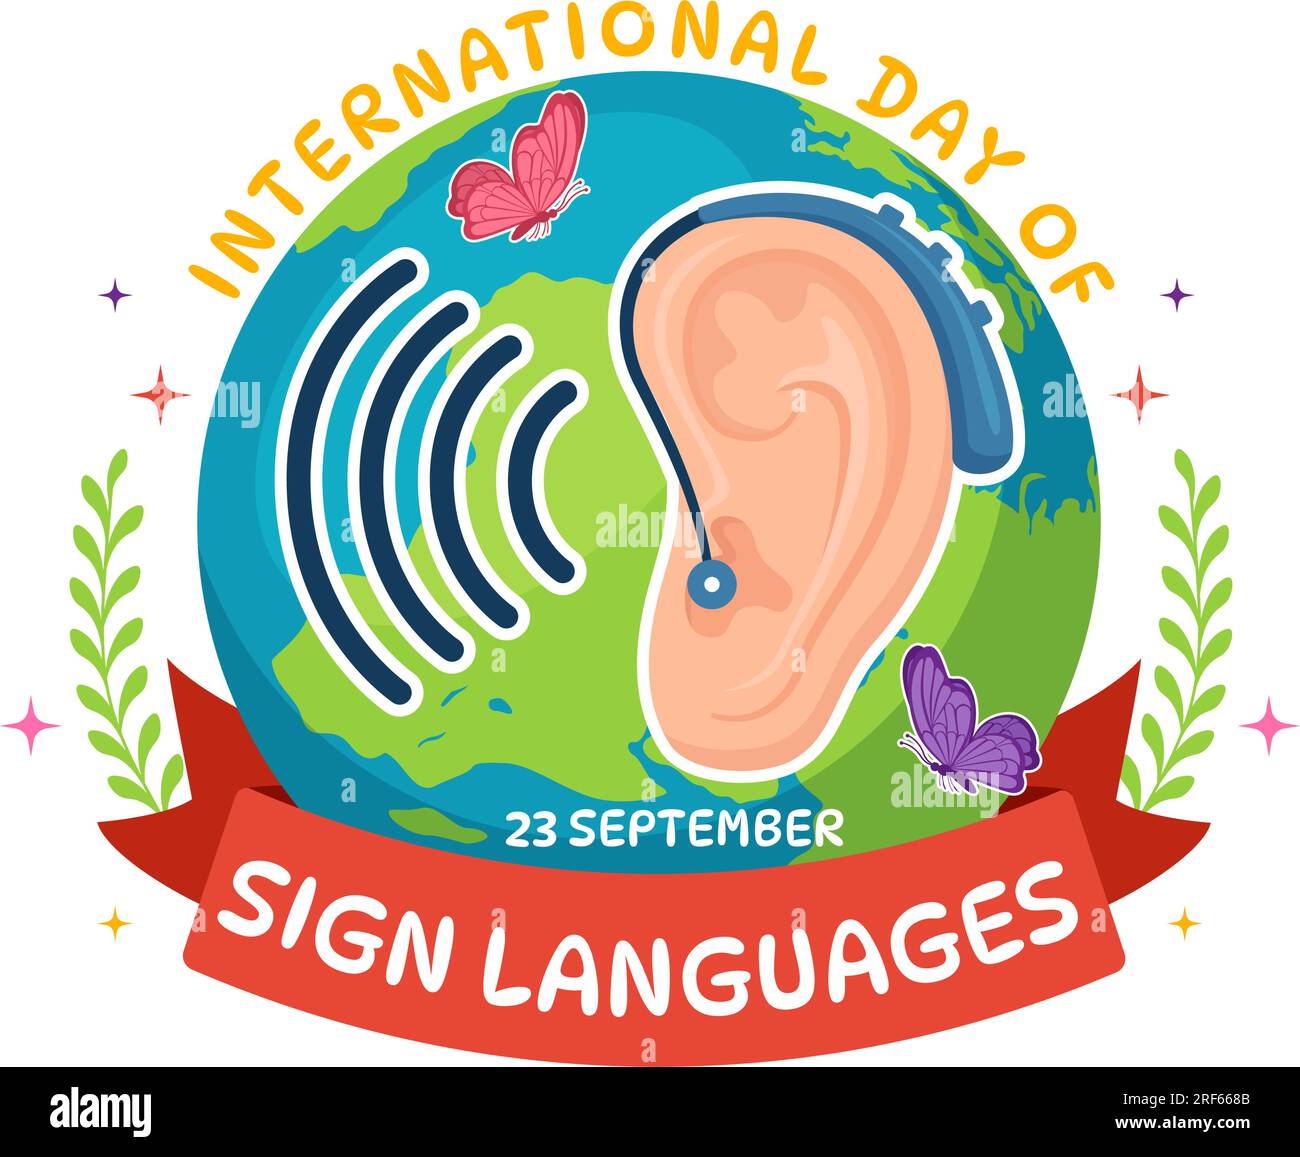 Internationaler Tag der Gebärdensprachen Vektorabbildung mit Menschen Zeigen Sie Handgesten und Hörbehinderungen in flachen, handgezogenen Cartoon-Vorlagen Stock Vektor